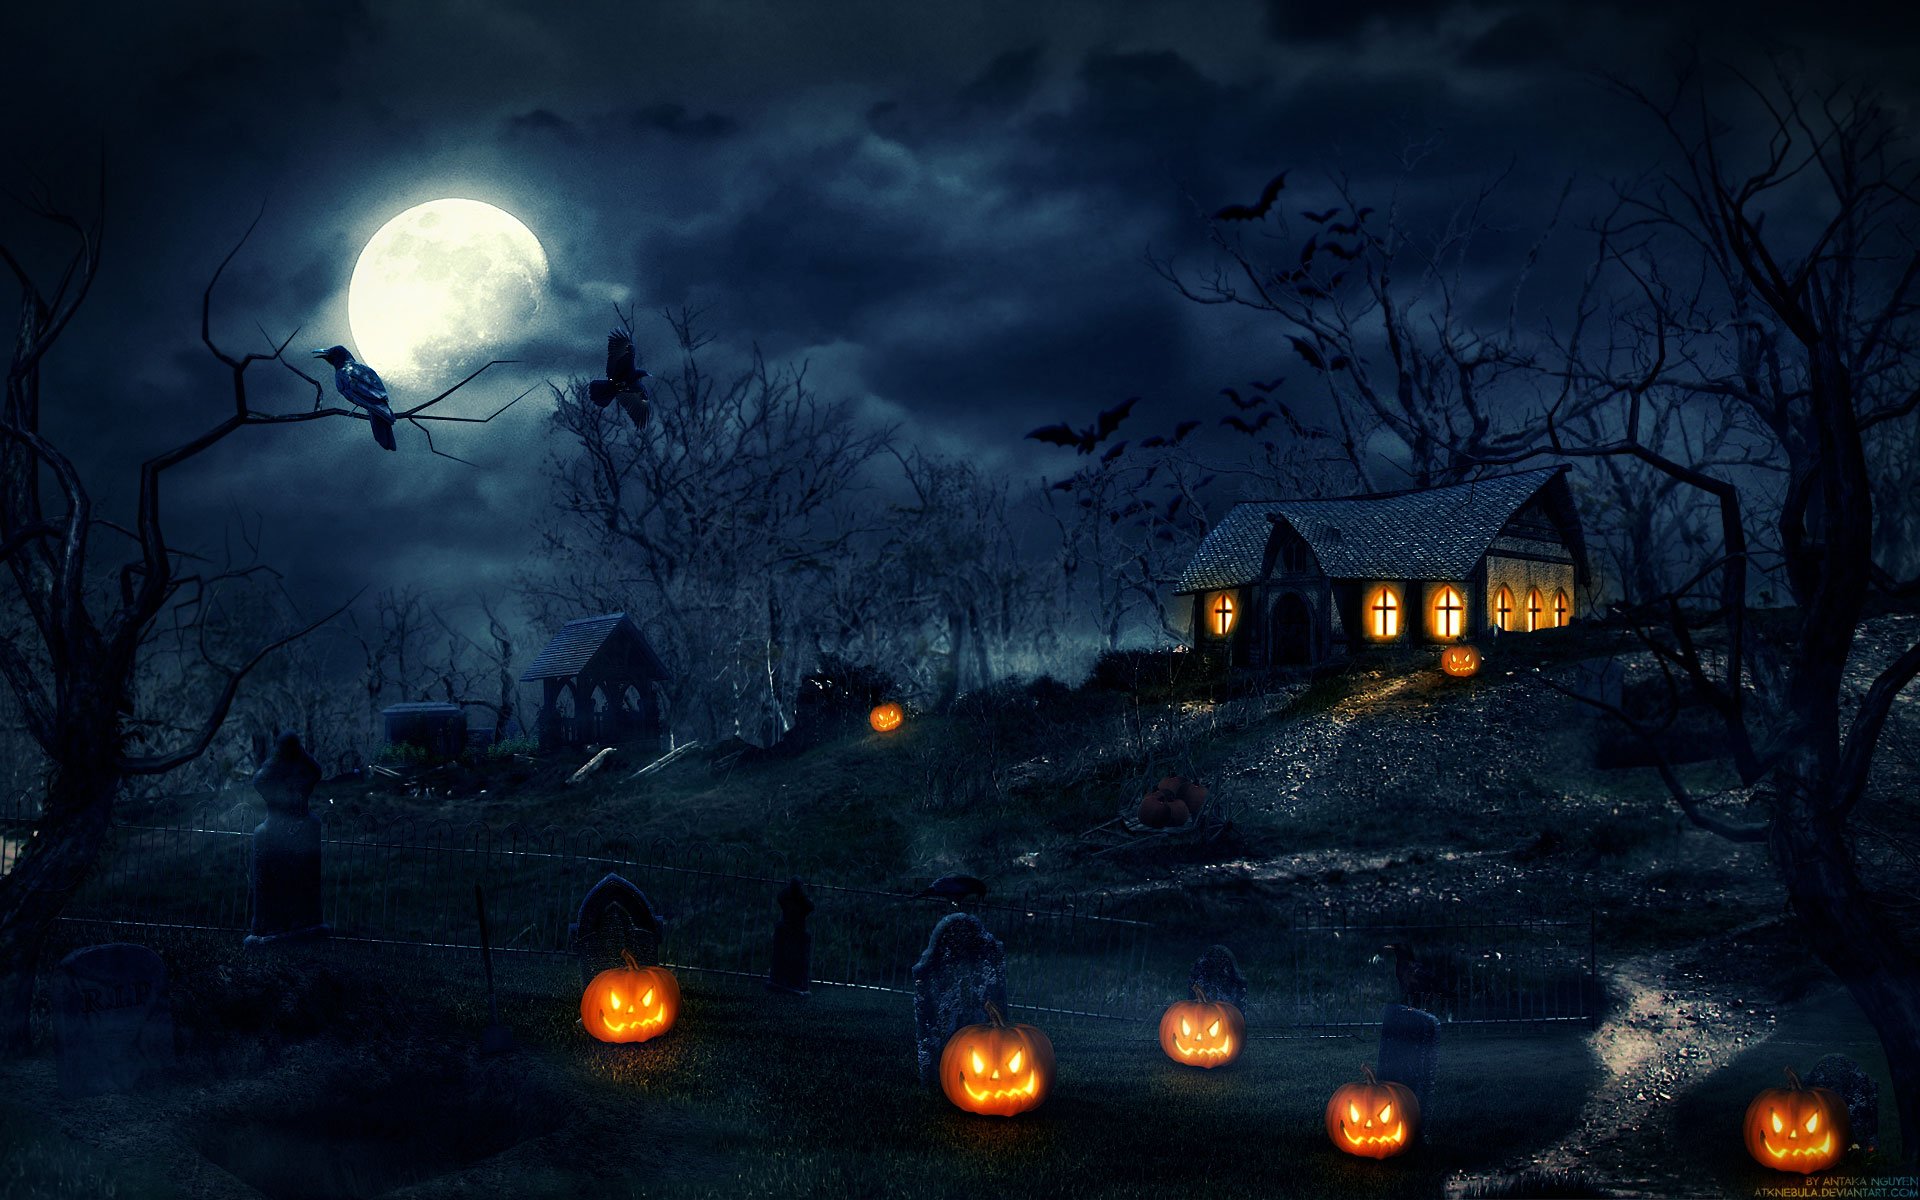 Halloween Wallpapers: 30 Spooky Backgrounds for Your Desktop